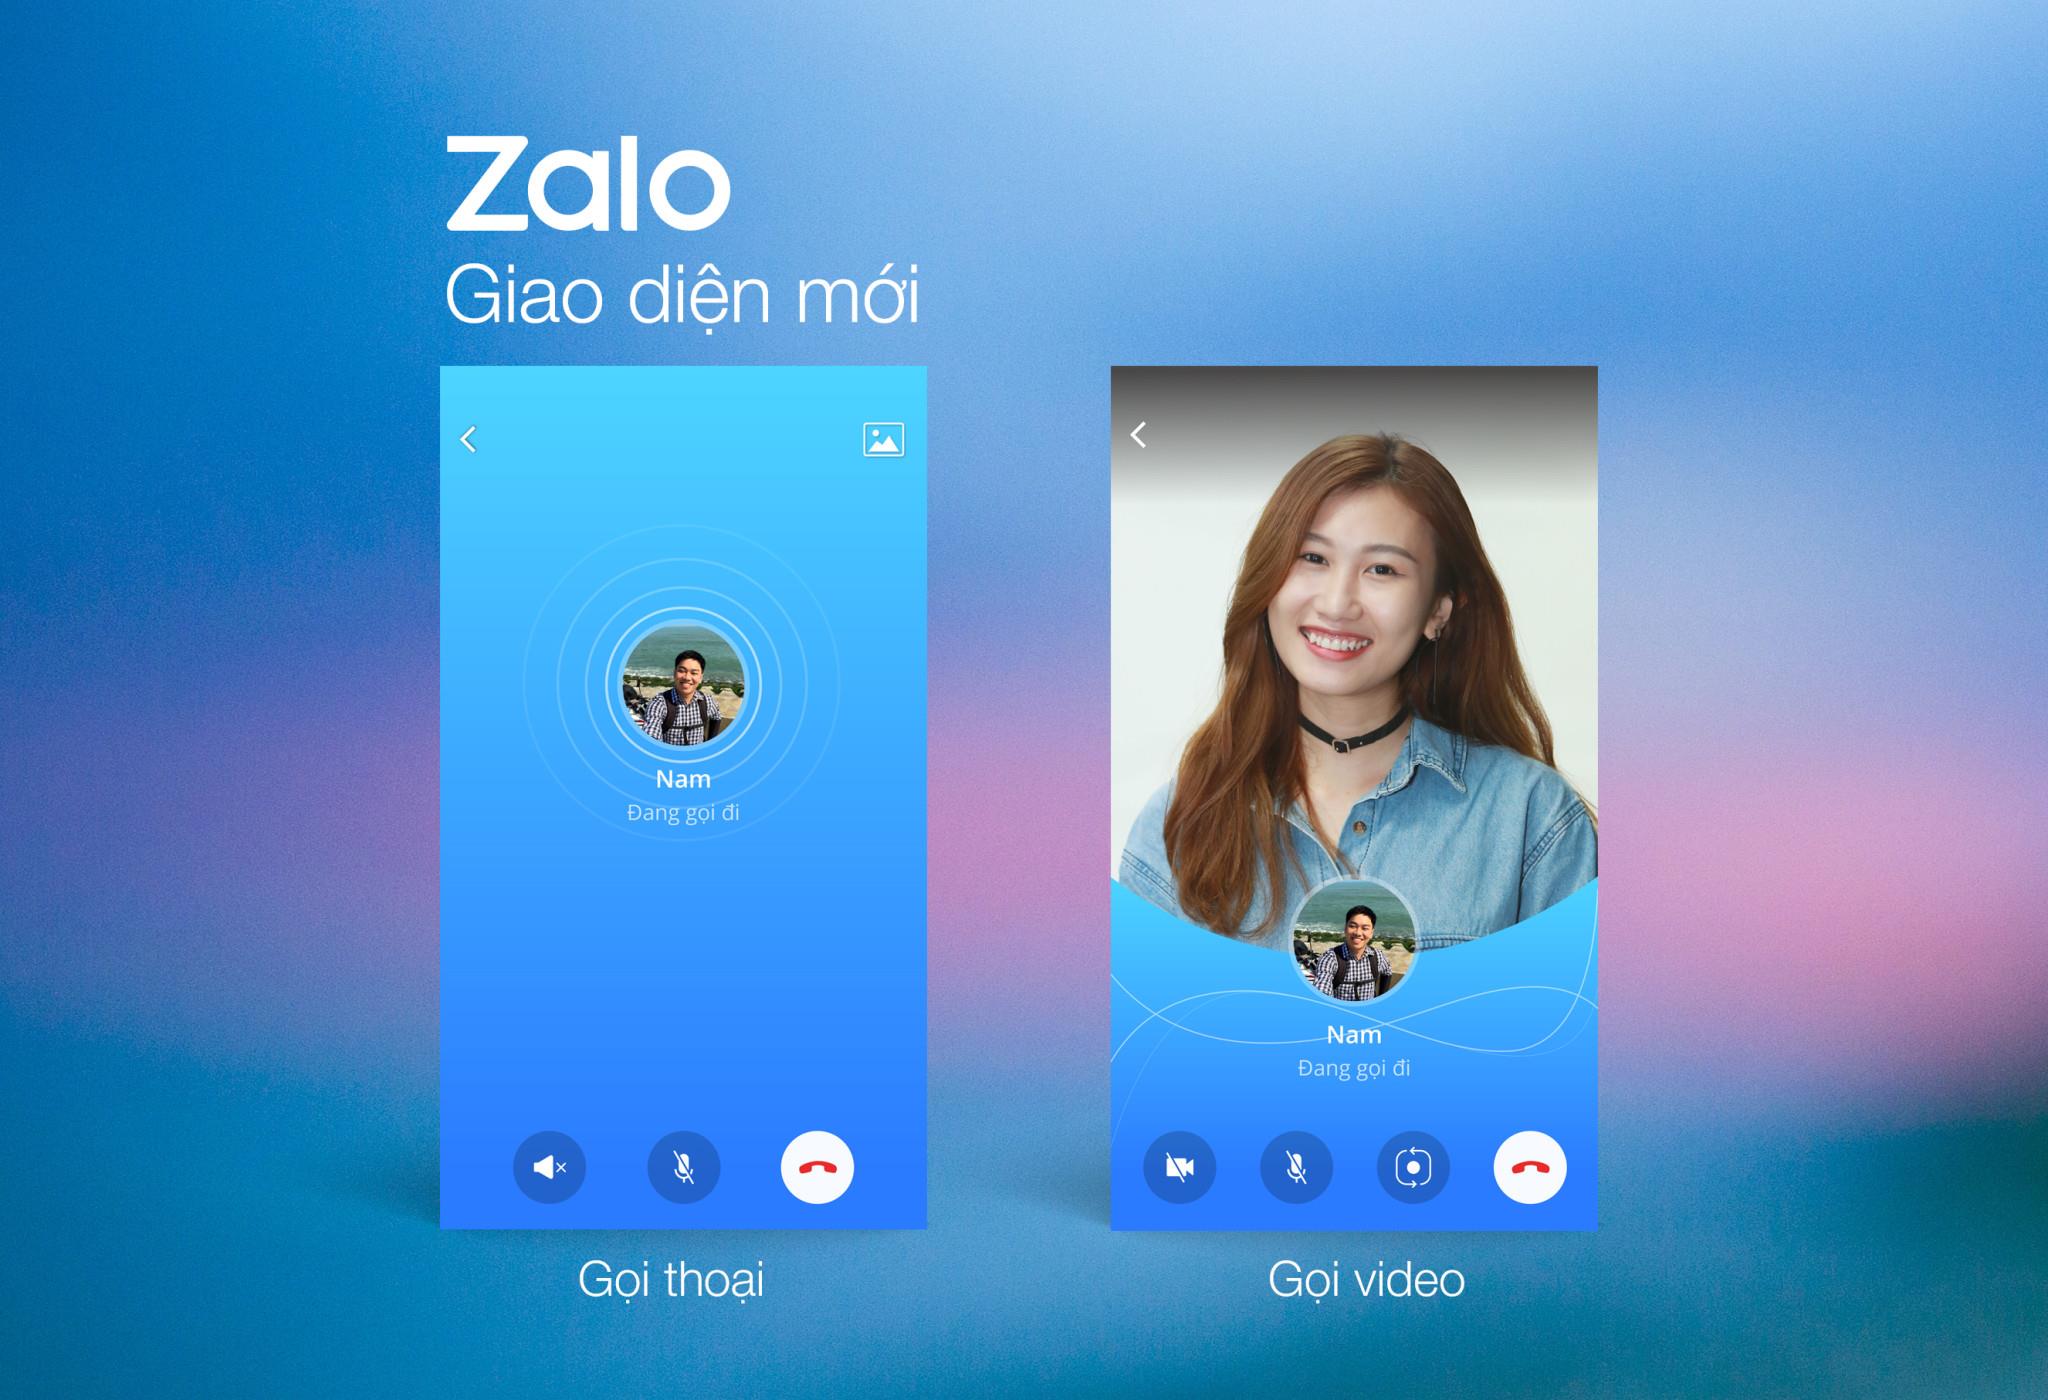 Cách cài đặt Zalo cho iPhone, Android cực đơn giản và chính xác 100%